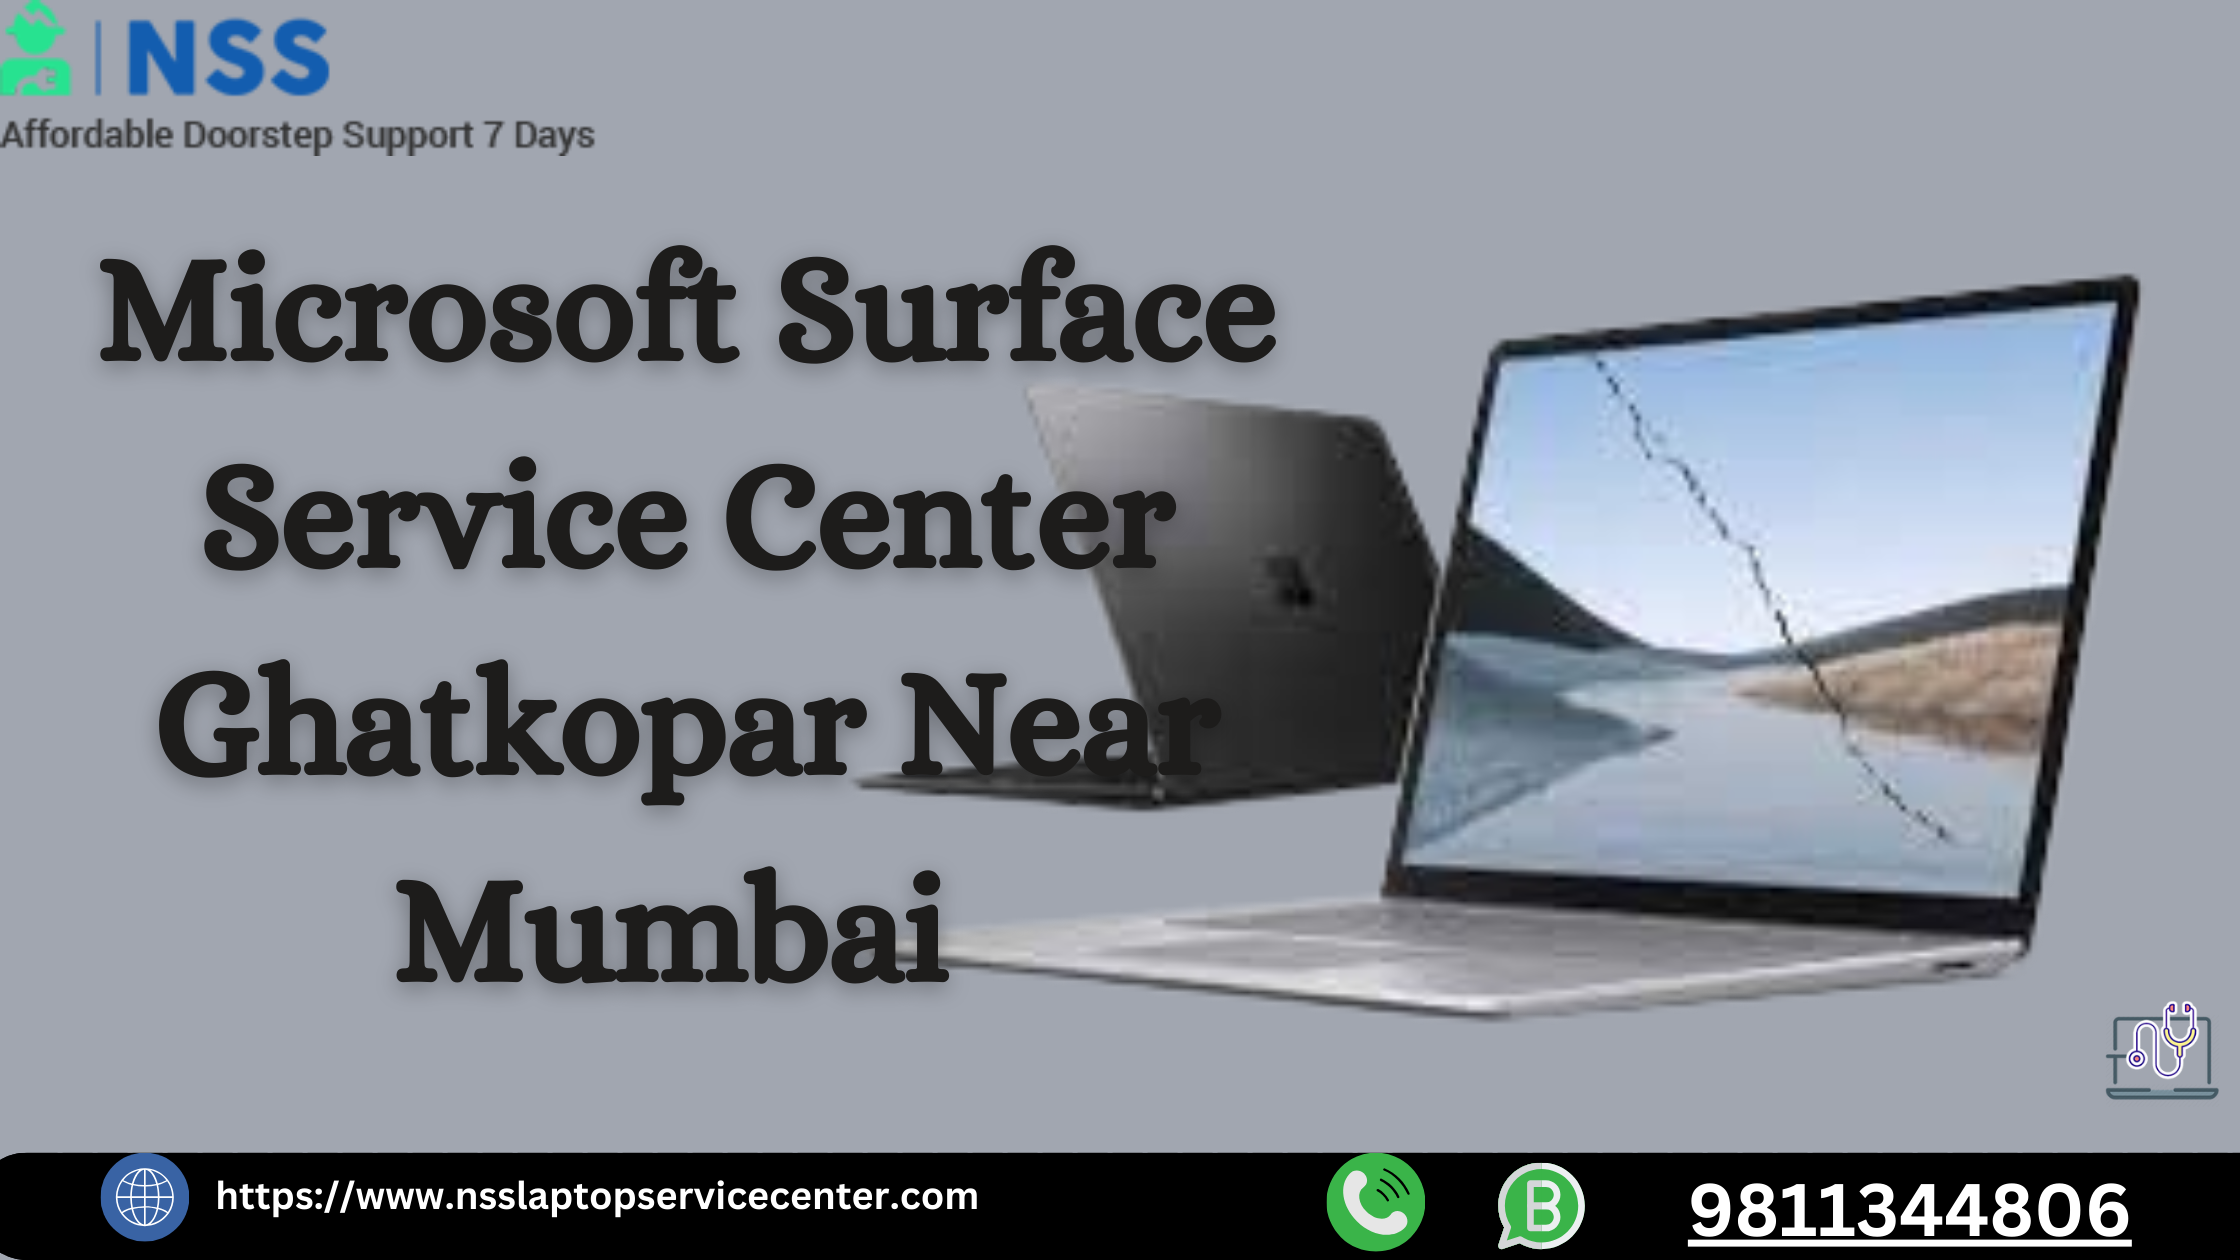 Microsoft Surface Service Center Ghatkopar Near Mumbai